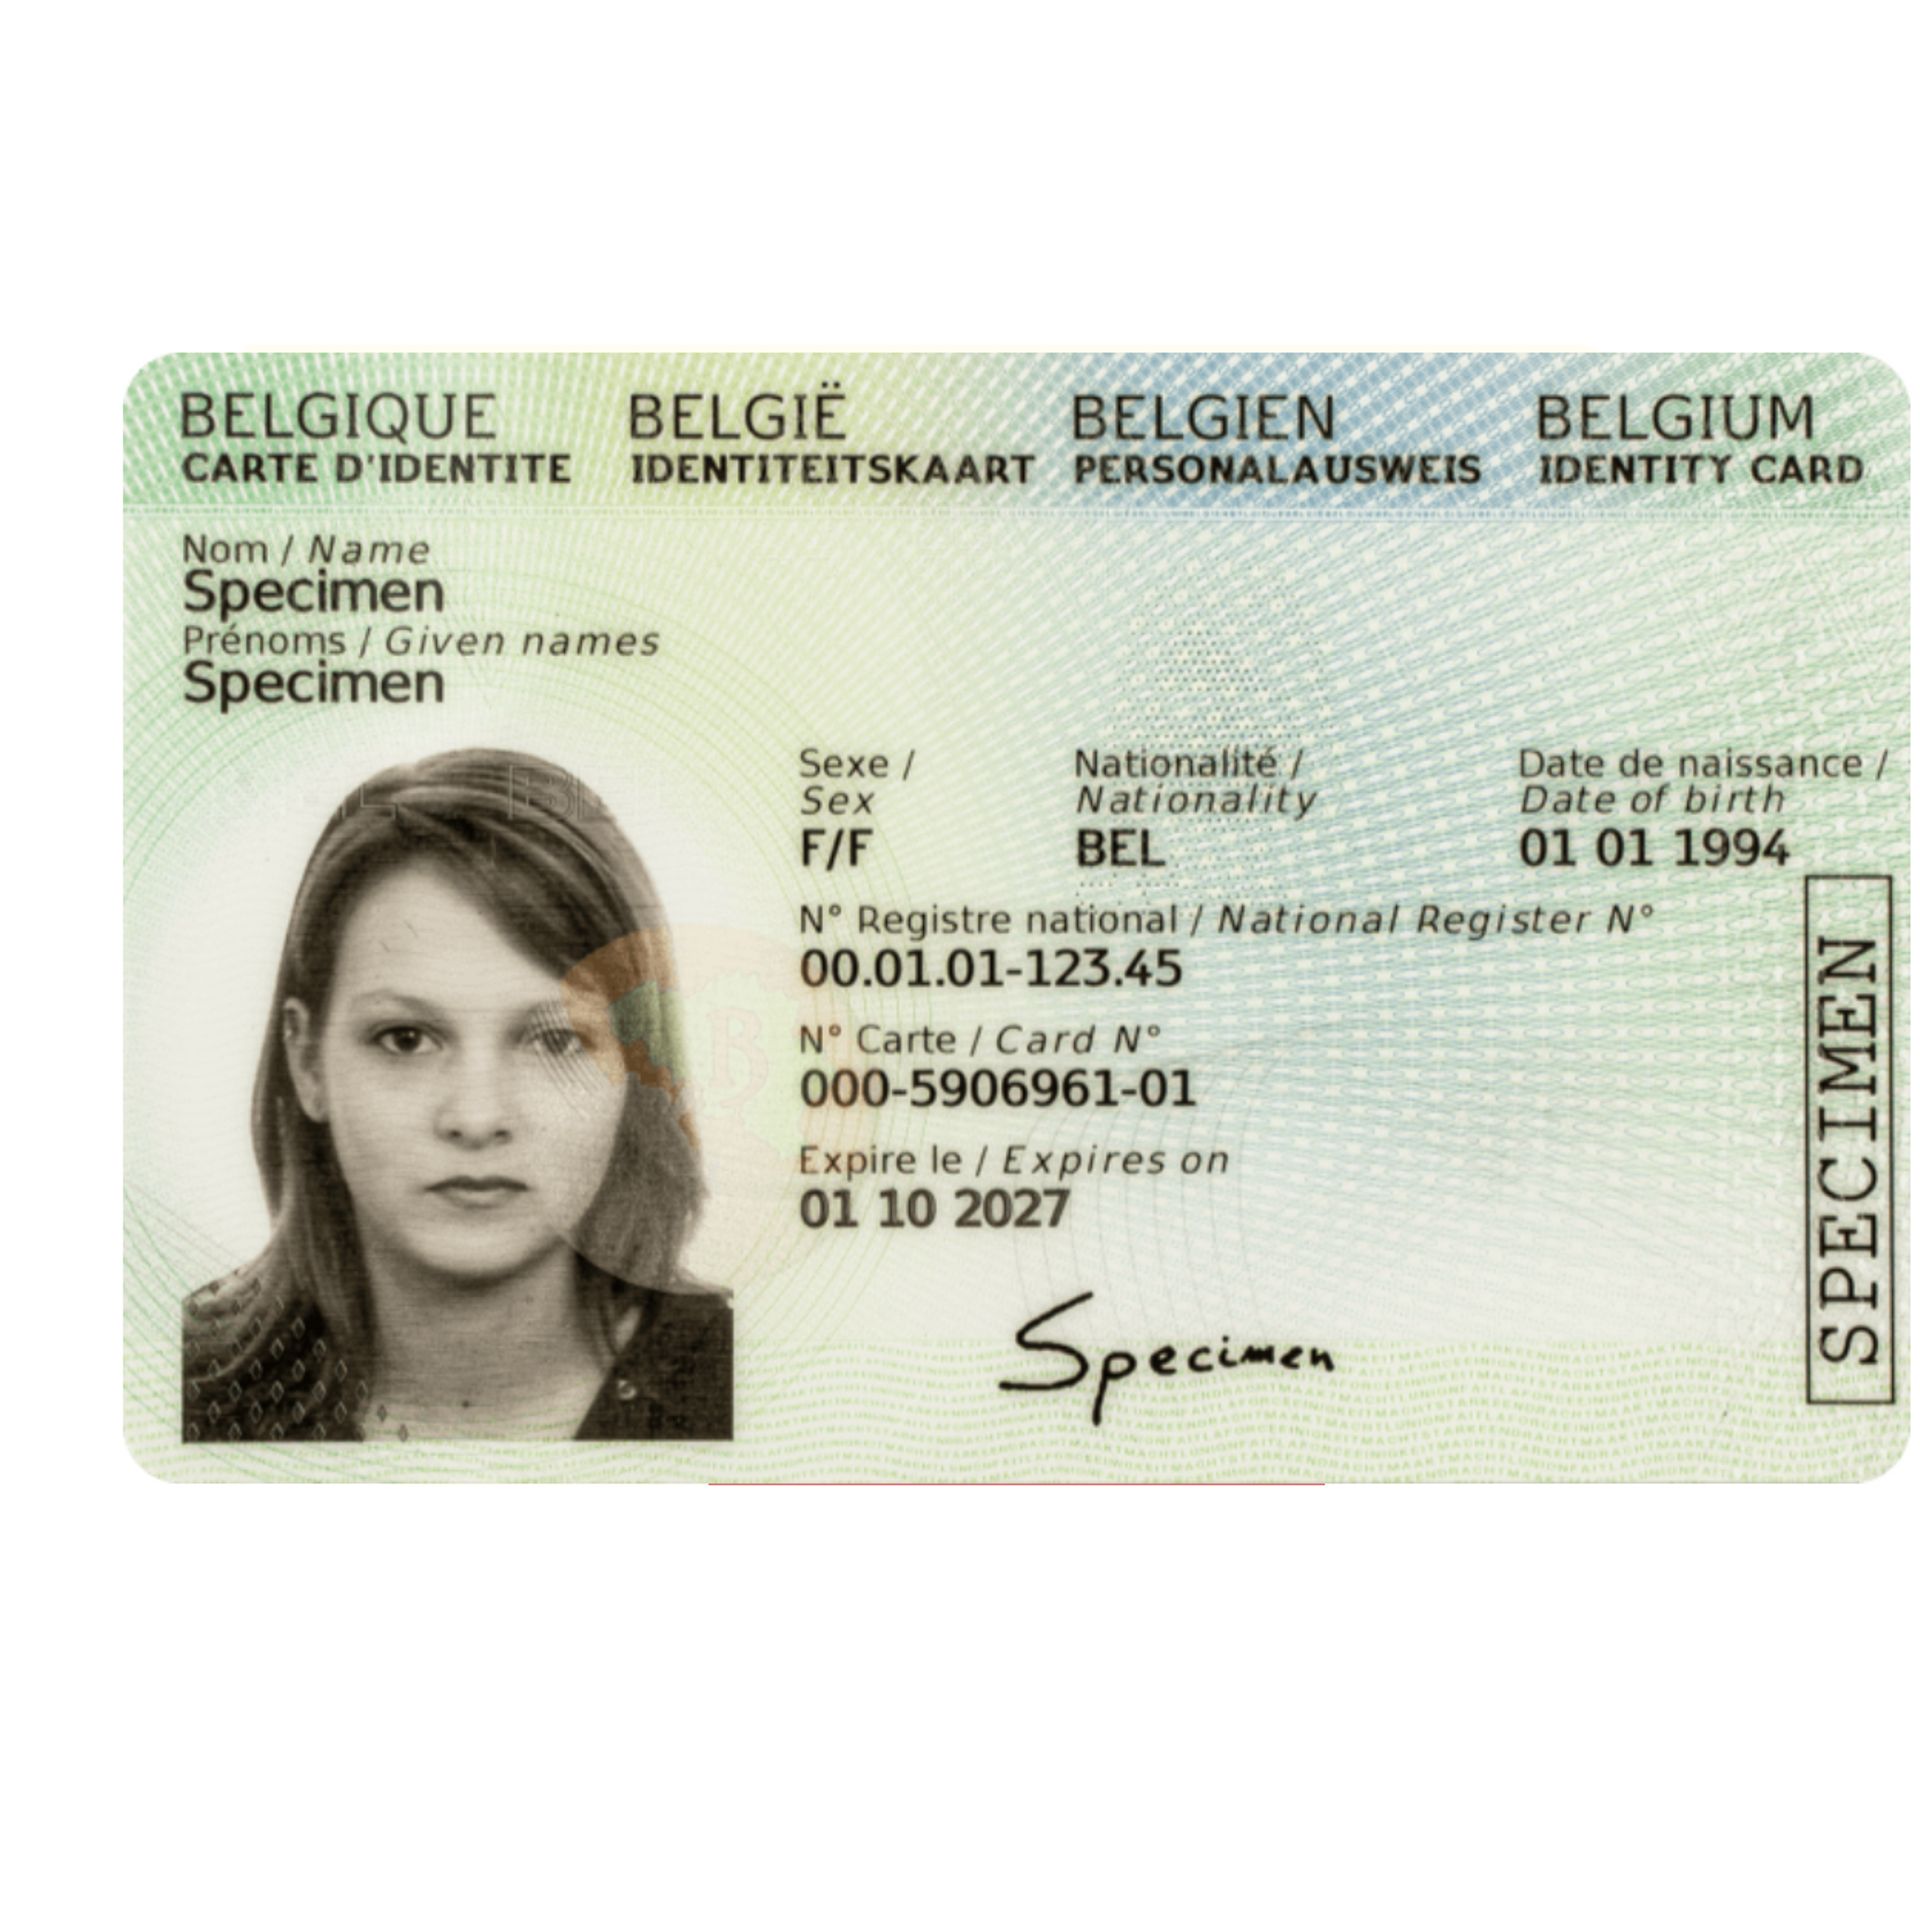 Les Belges ne seraient pas tentés par une carte d'identité